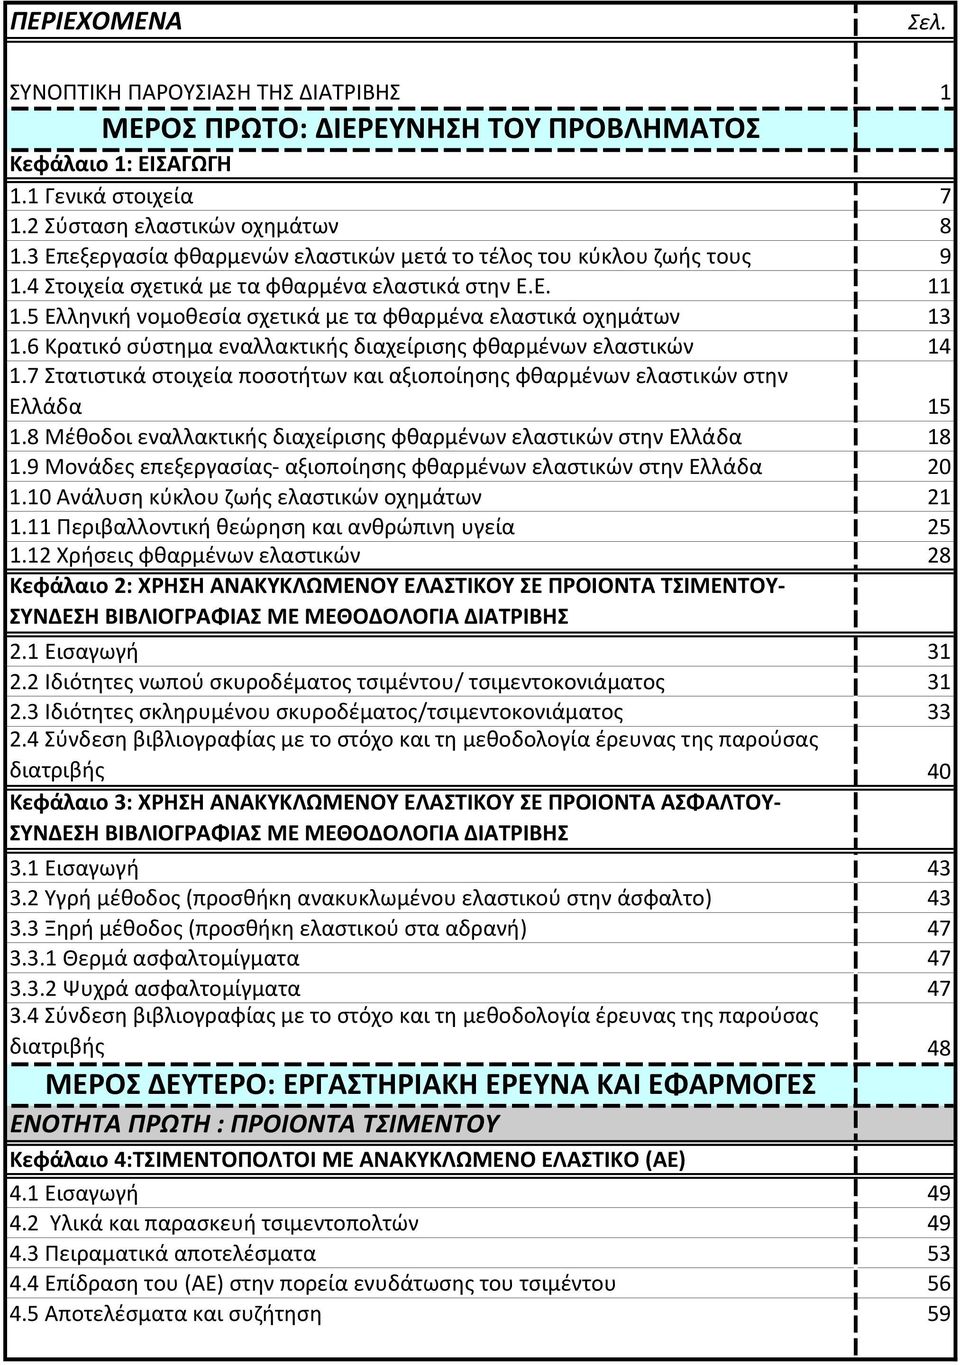 6 Κρατικό σύστημα εναλλακτικής διαχείρισης φθαρμένων ελαστικών 14 1.7 Στατιστικά στοιχεία ποσοτήτων και αξιοποίησης φθαρμένων ελαστικών στην Ελλάδα 15 1.